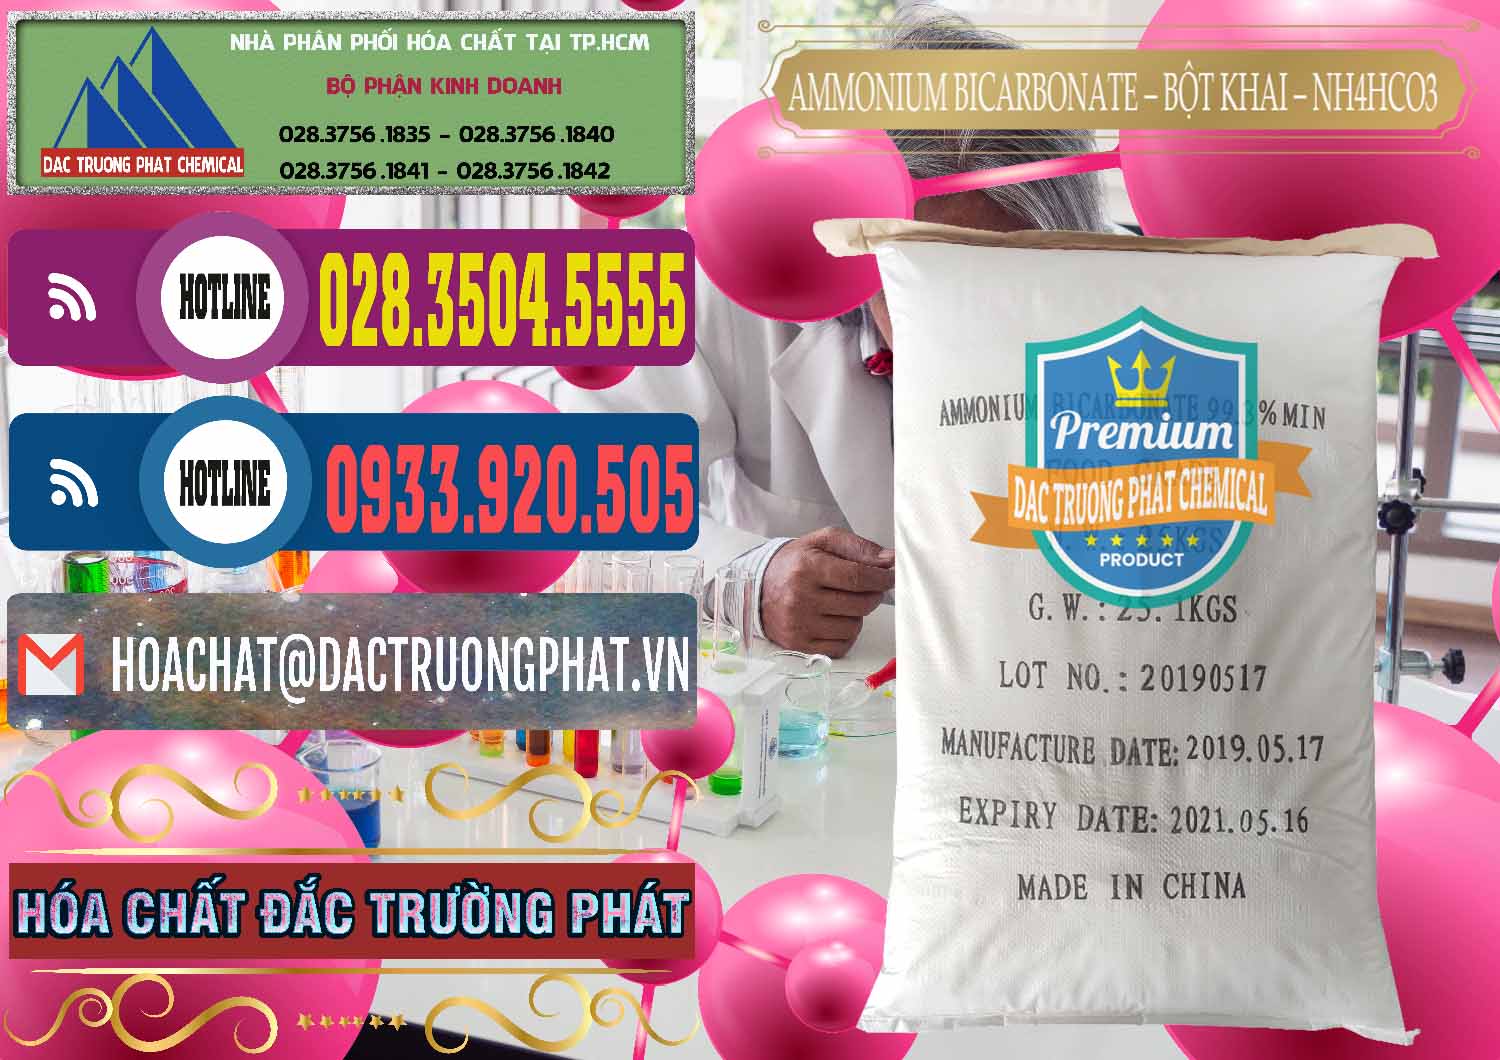 Công ty chuyên bán _ phân phối Ammonium Bicarbonate - Bột Khai Food Grade Trung Quốc China - 0018 - Cty chuyên bán - phân phối hóa chất tại TP.HCM - muabanhoachat.com.vn